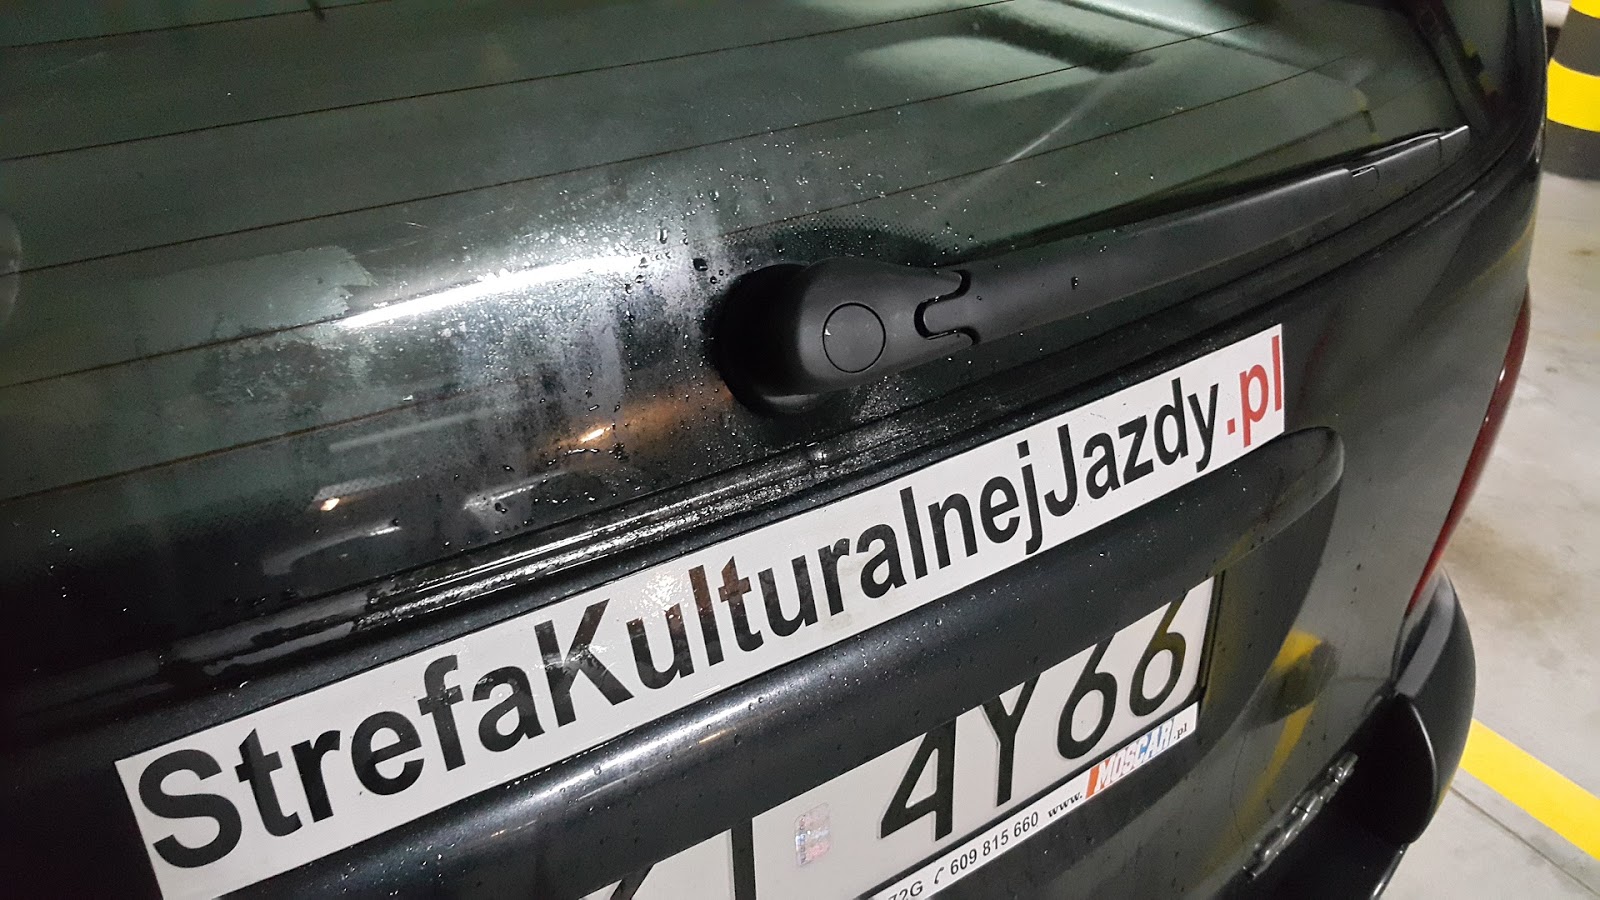 Jak Wymienić Tylną Wycieraczkę Zwłaszcza W Renault Scenic I Fl? | Blog Motoryzacyjny Strefa Kulturalnej Jazdy ¯\_(ツ)_/¯ By Albin Sieczkowski